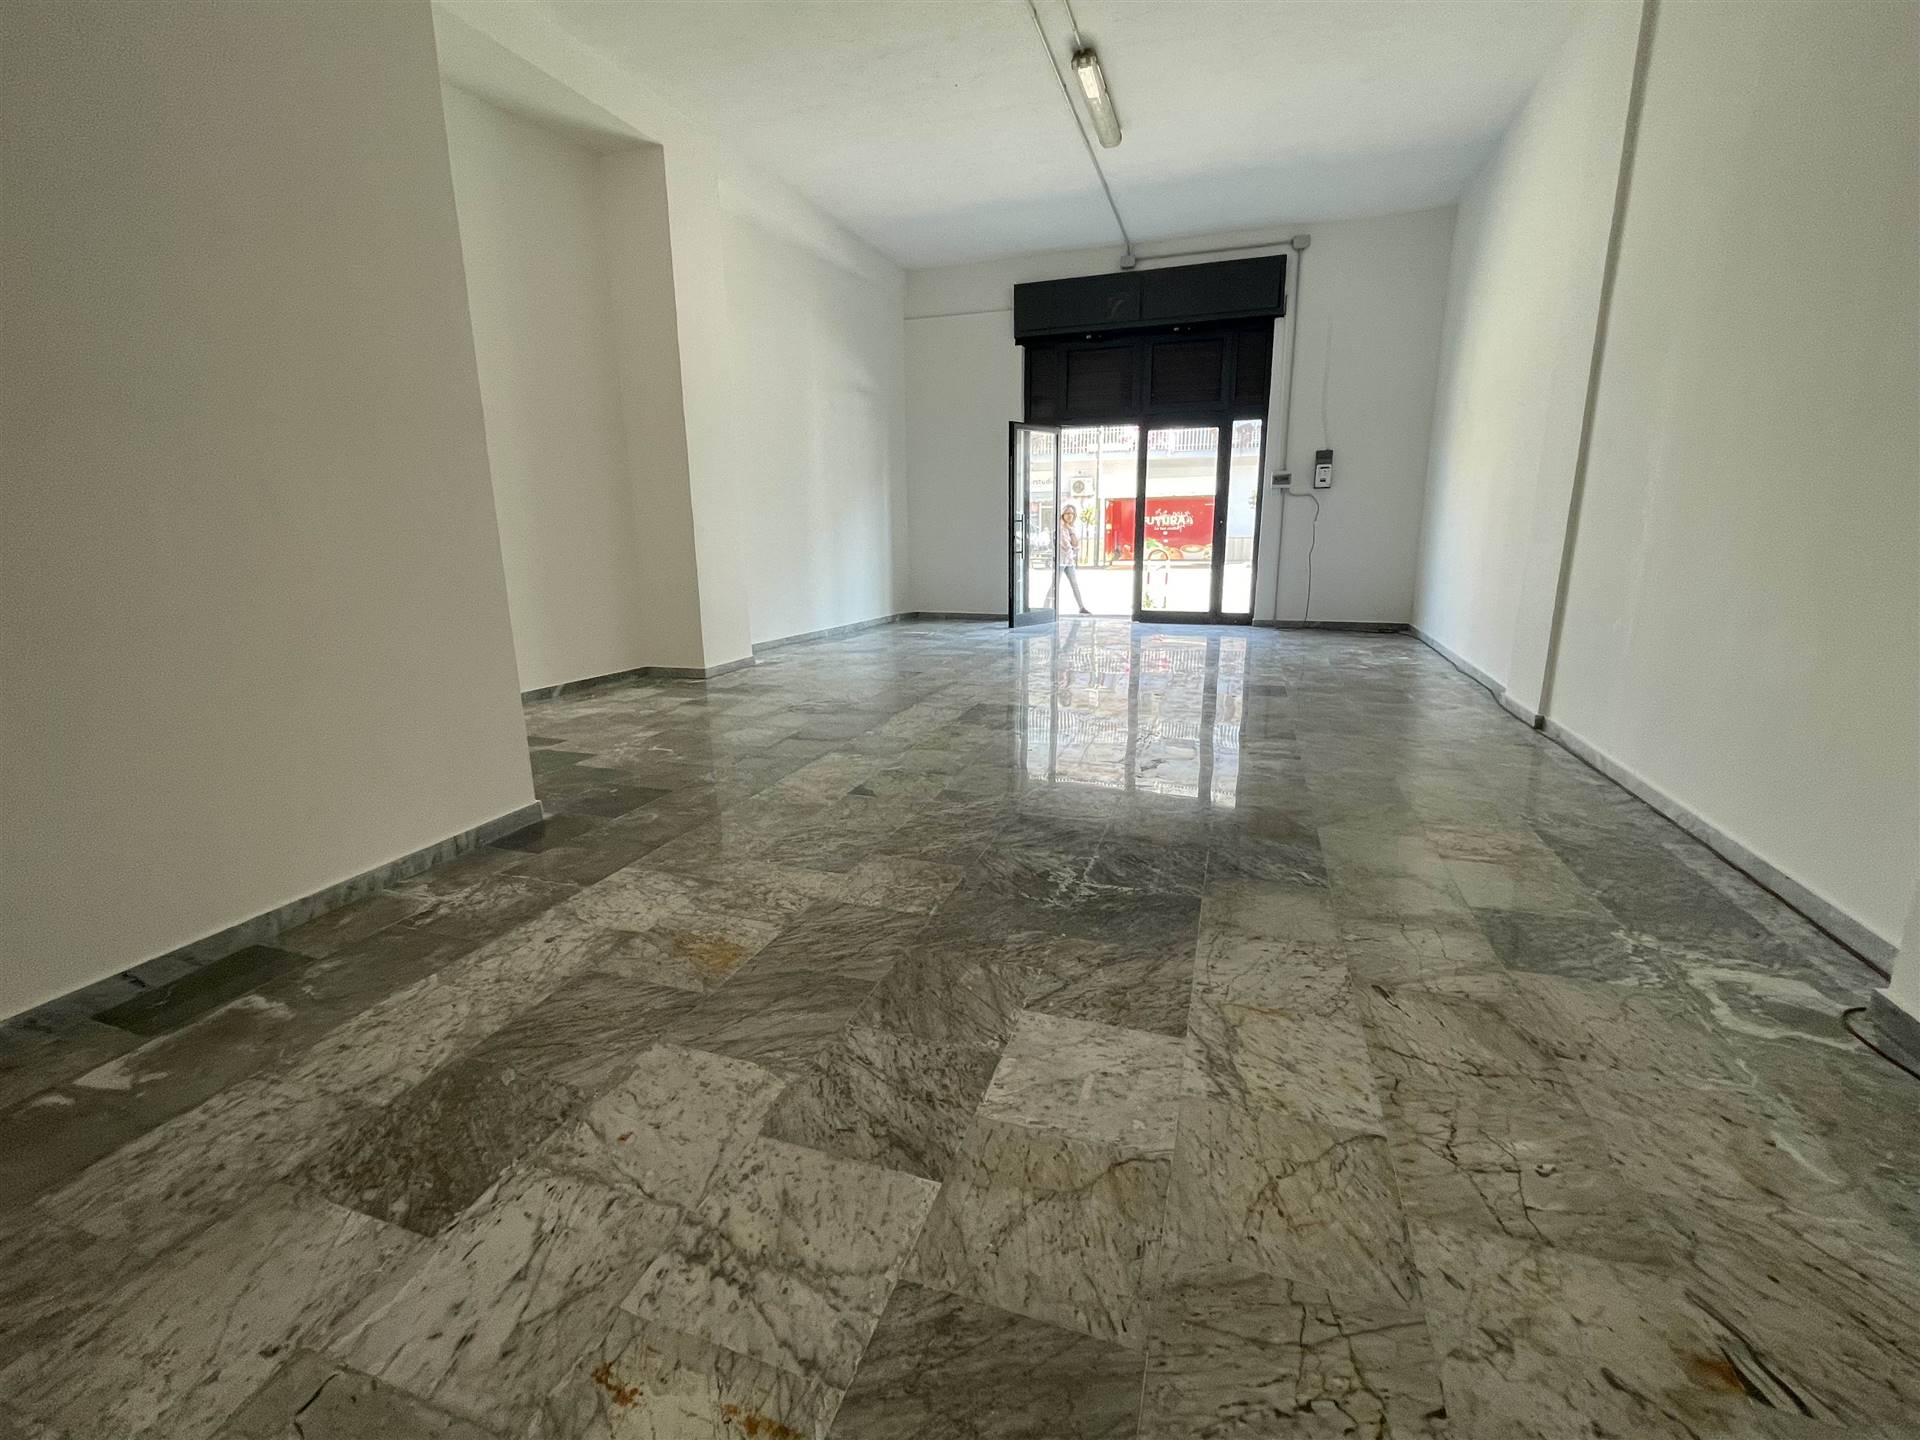 Immobile Commerciale in affitto a Bellizzi, 9999 locali, zona Località: PRATOLE, prezzo € 1.100 | PortaleAgenzieImmobiliari.it